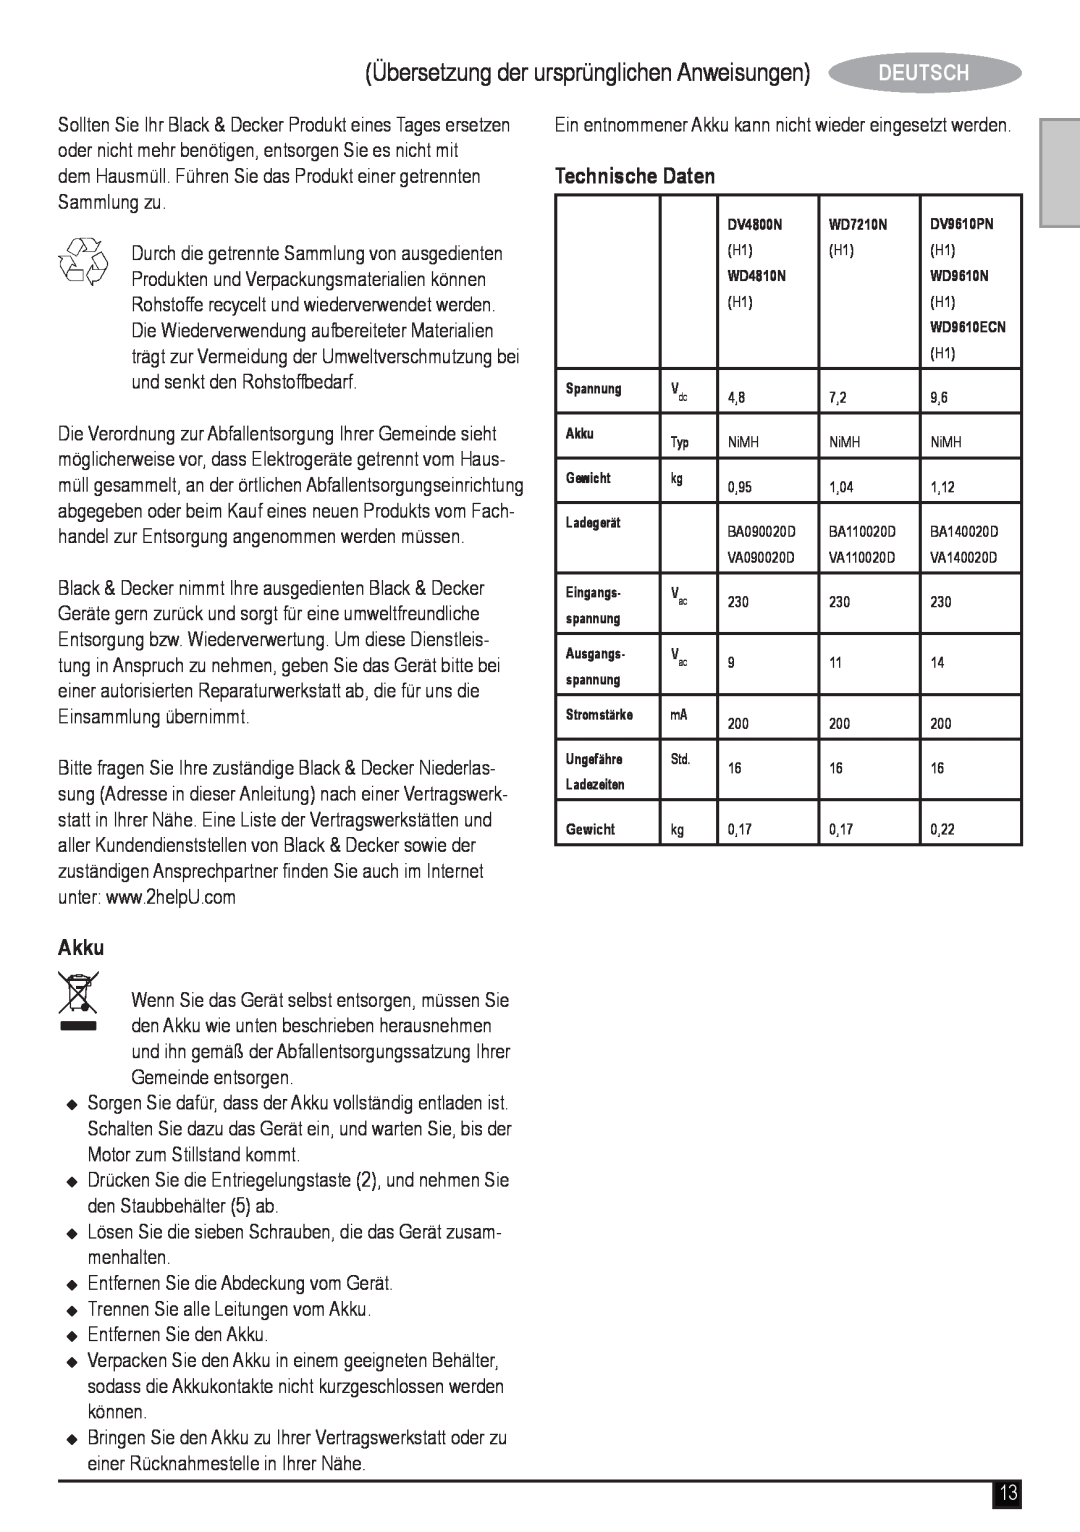 Black & Decker WD7210N, WD4810N, WD9610N manual Akku, Technische Daten, Übersetzung der ursprünglichen Anweisungen, Deutsch 